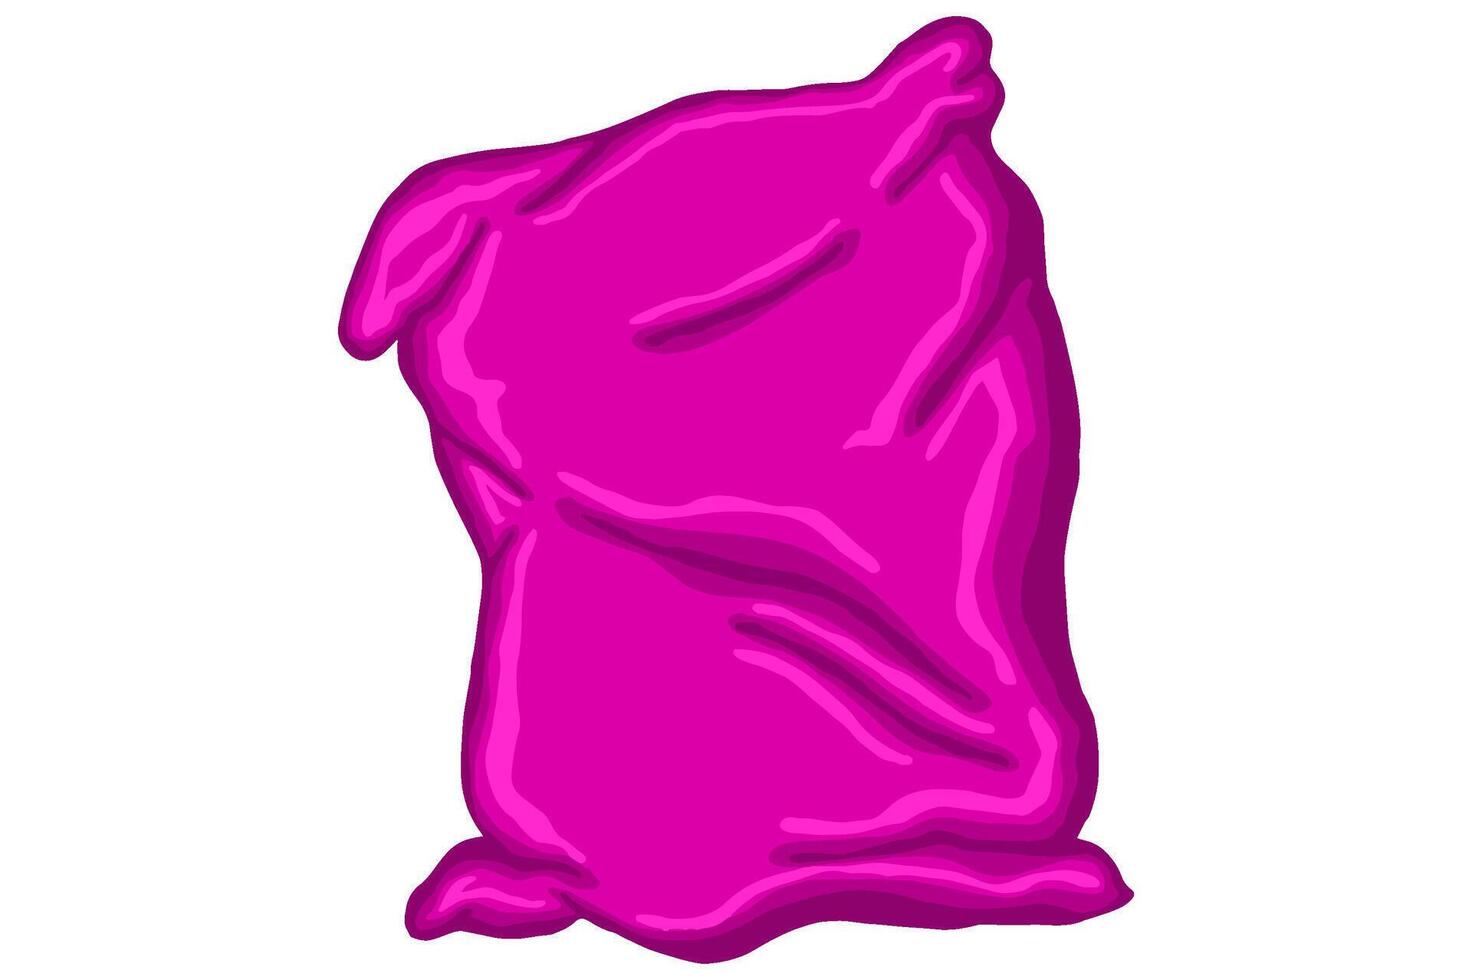 A Pink Pillow Vector